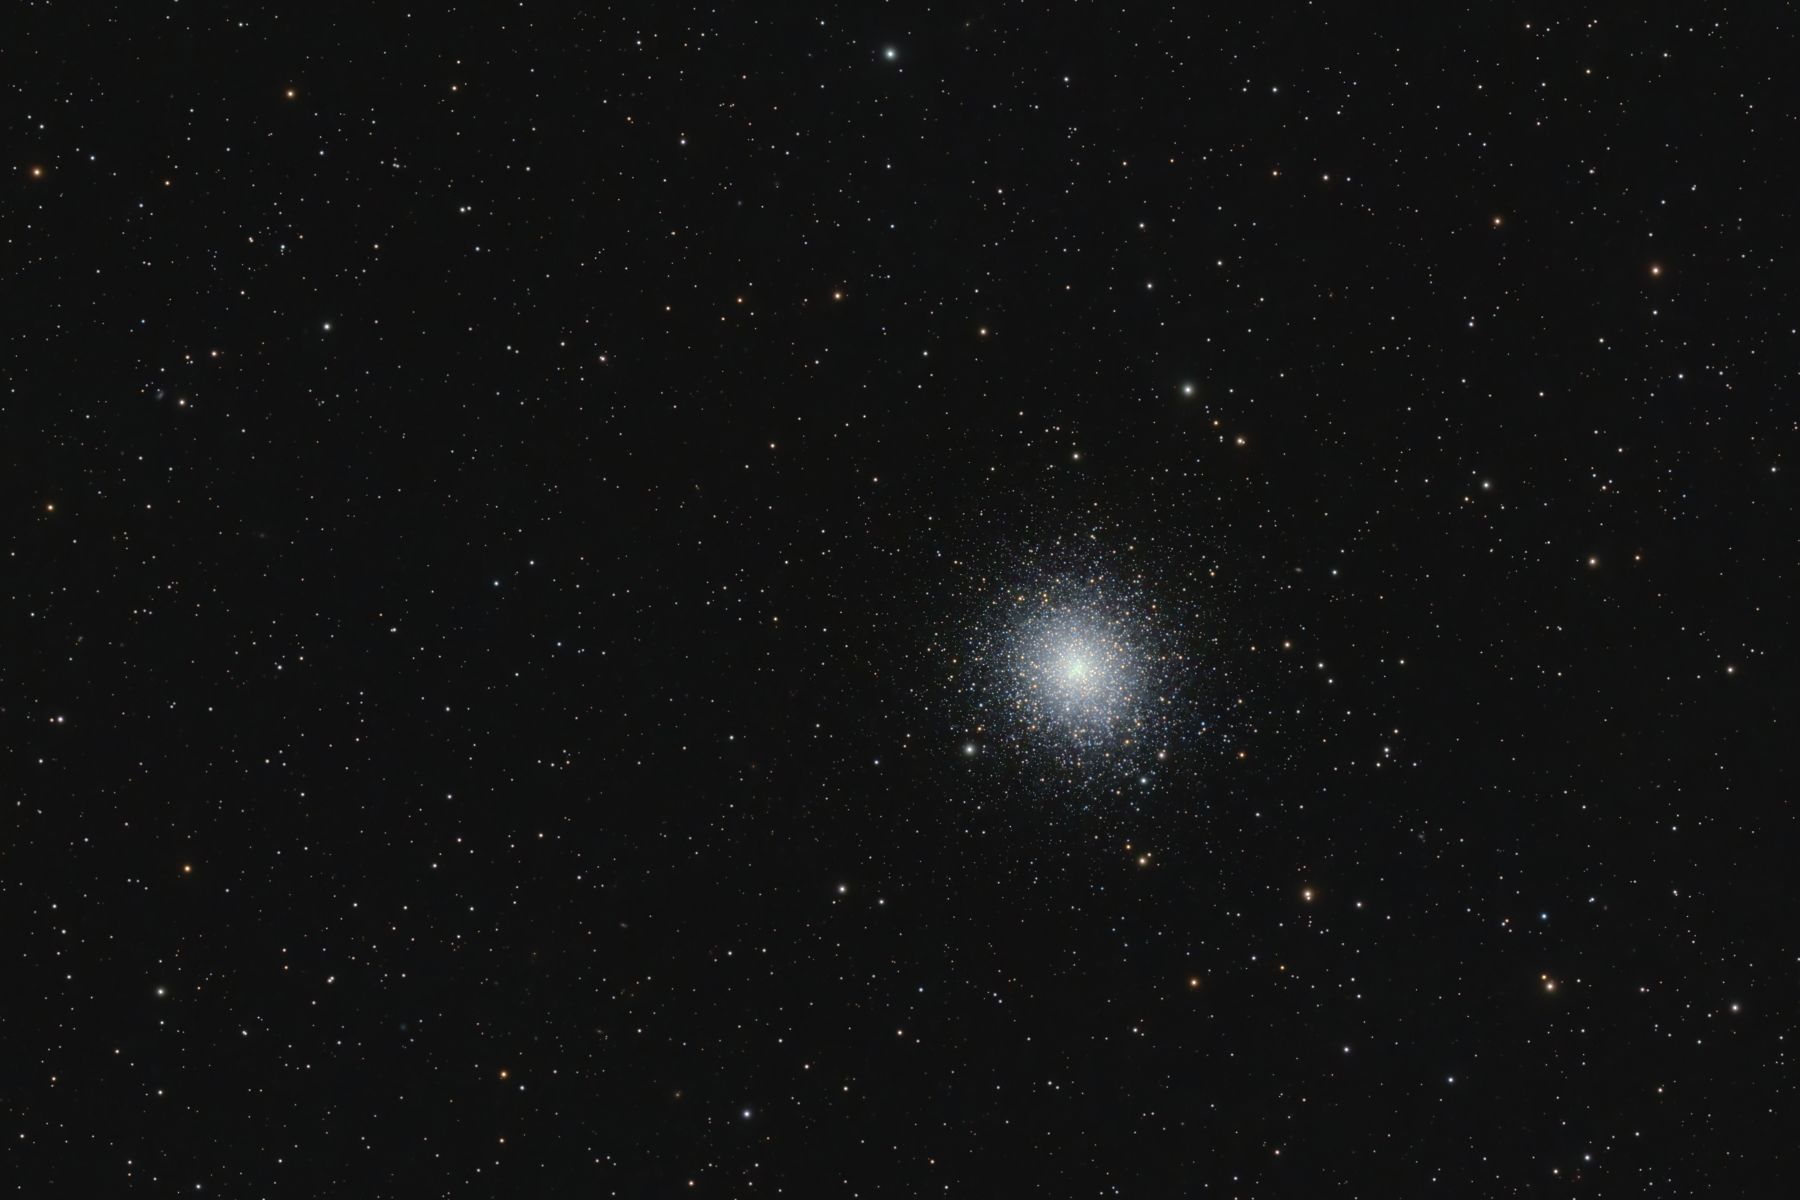 Globular Cluster M2 in Aquarius